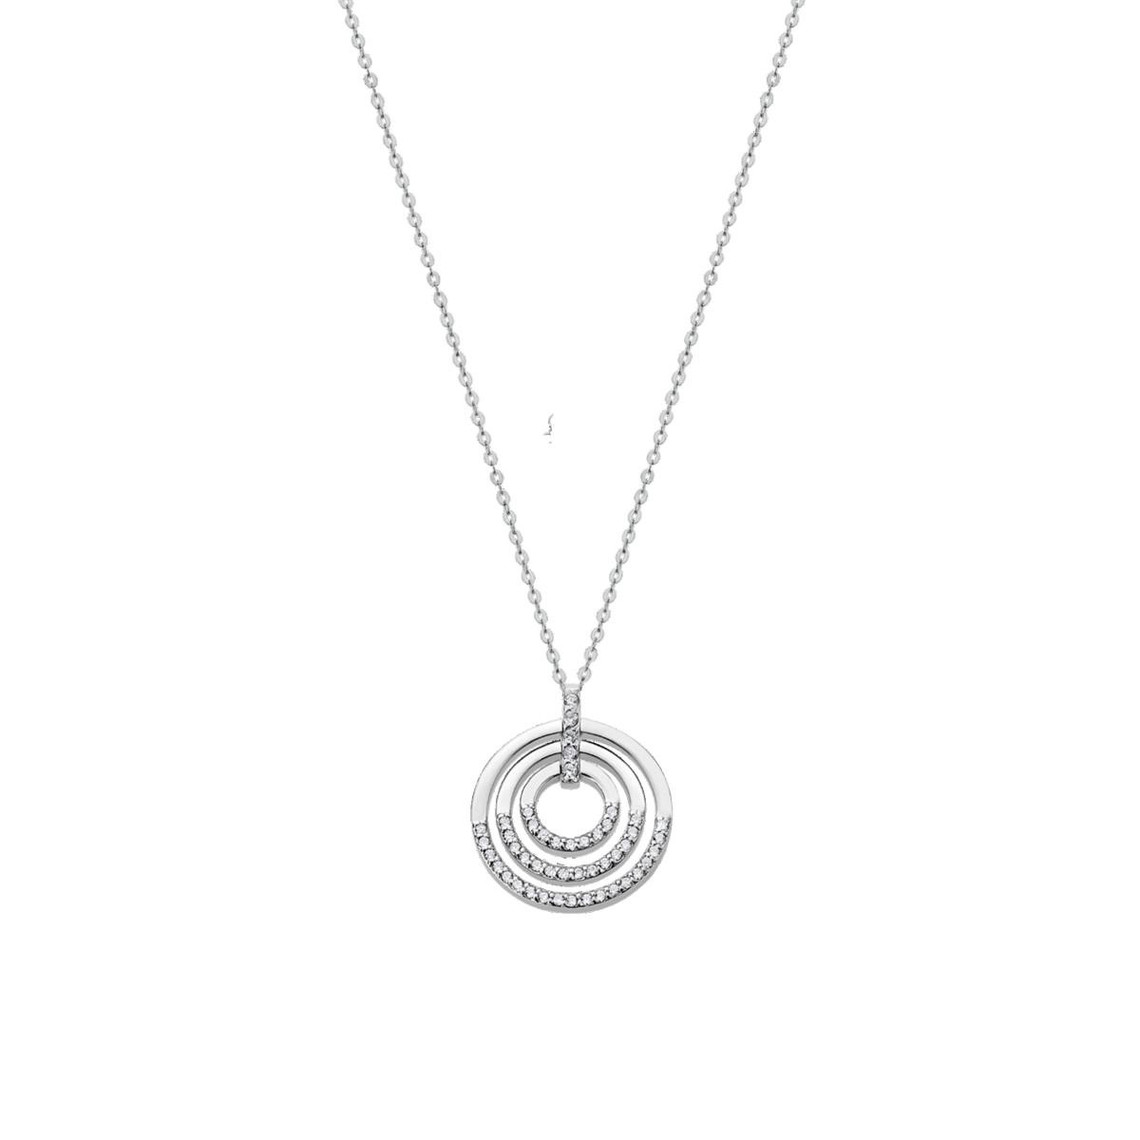 collier et pendentif lotus silver pure essentiel lp1755-1-1 - collier et pendentifargent trois anneaux 20 mmlotus silver